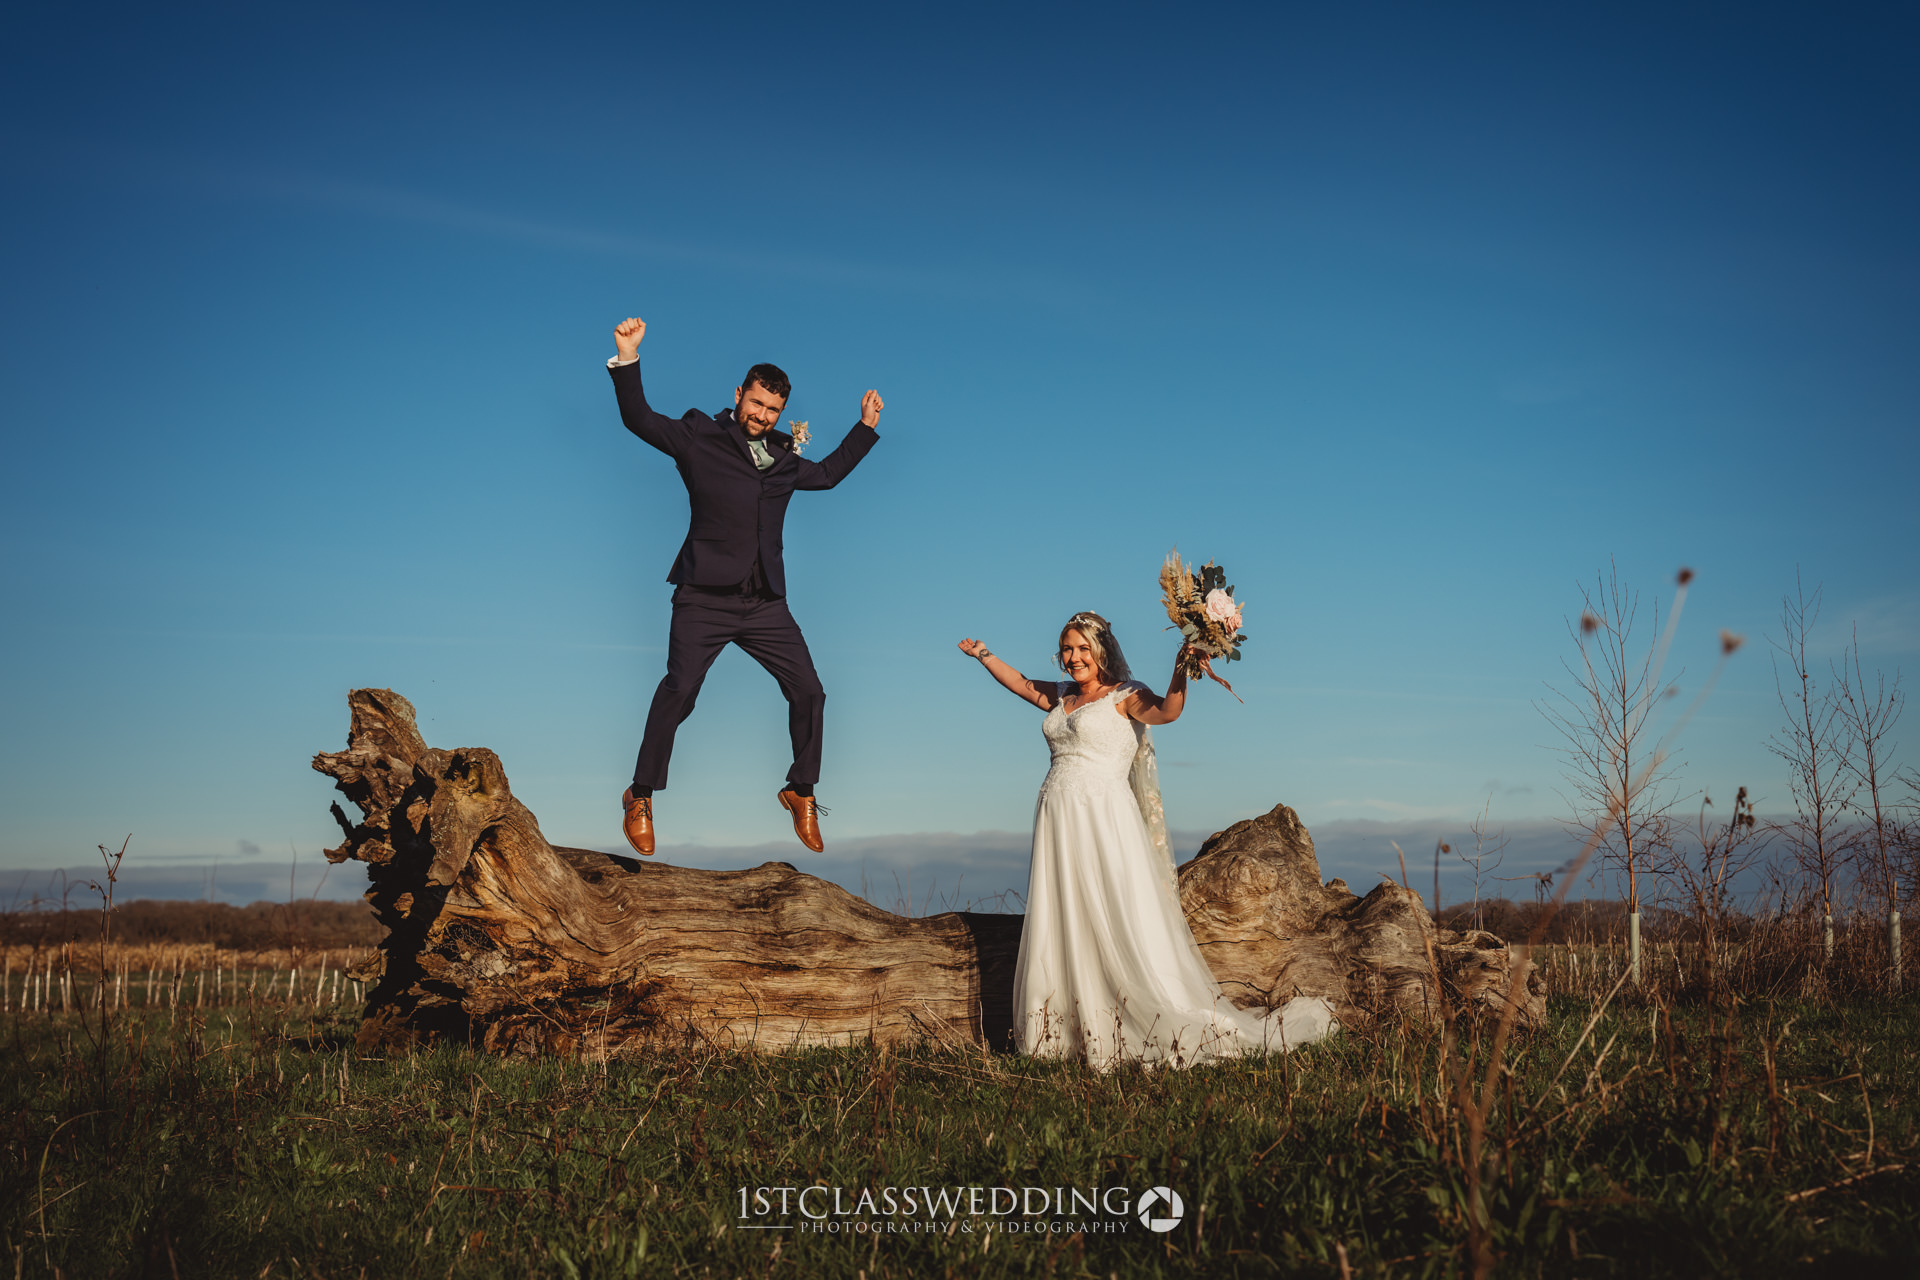 Joyful wedding couple jumping and celebrating outdoors.